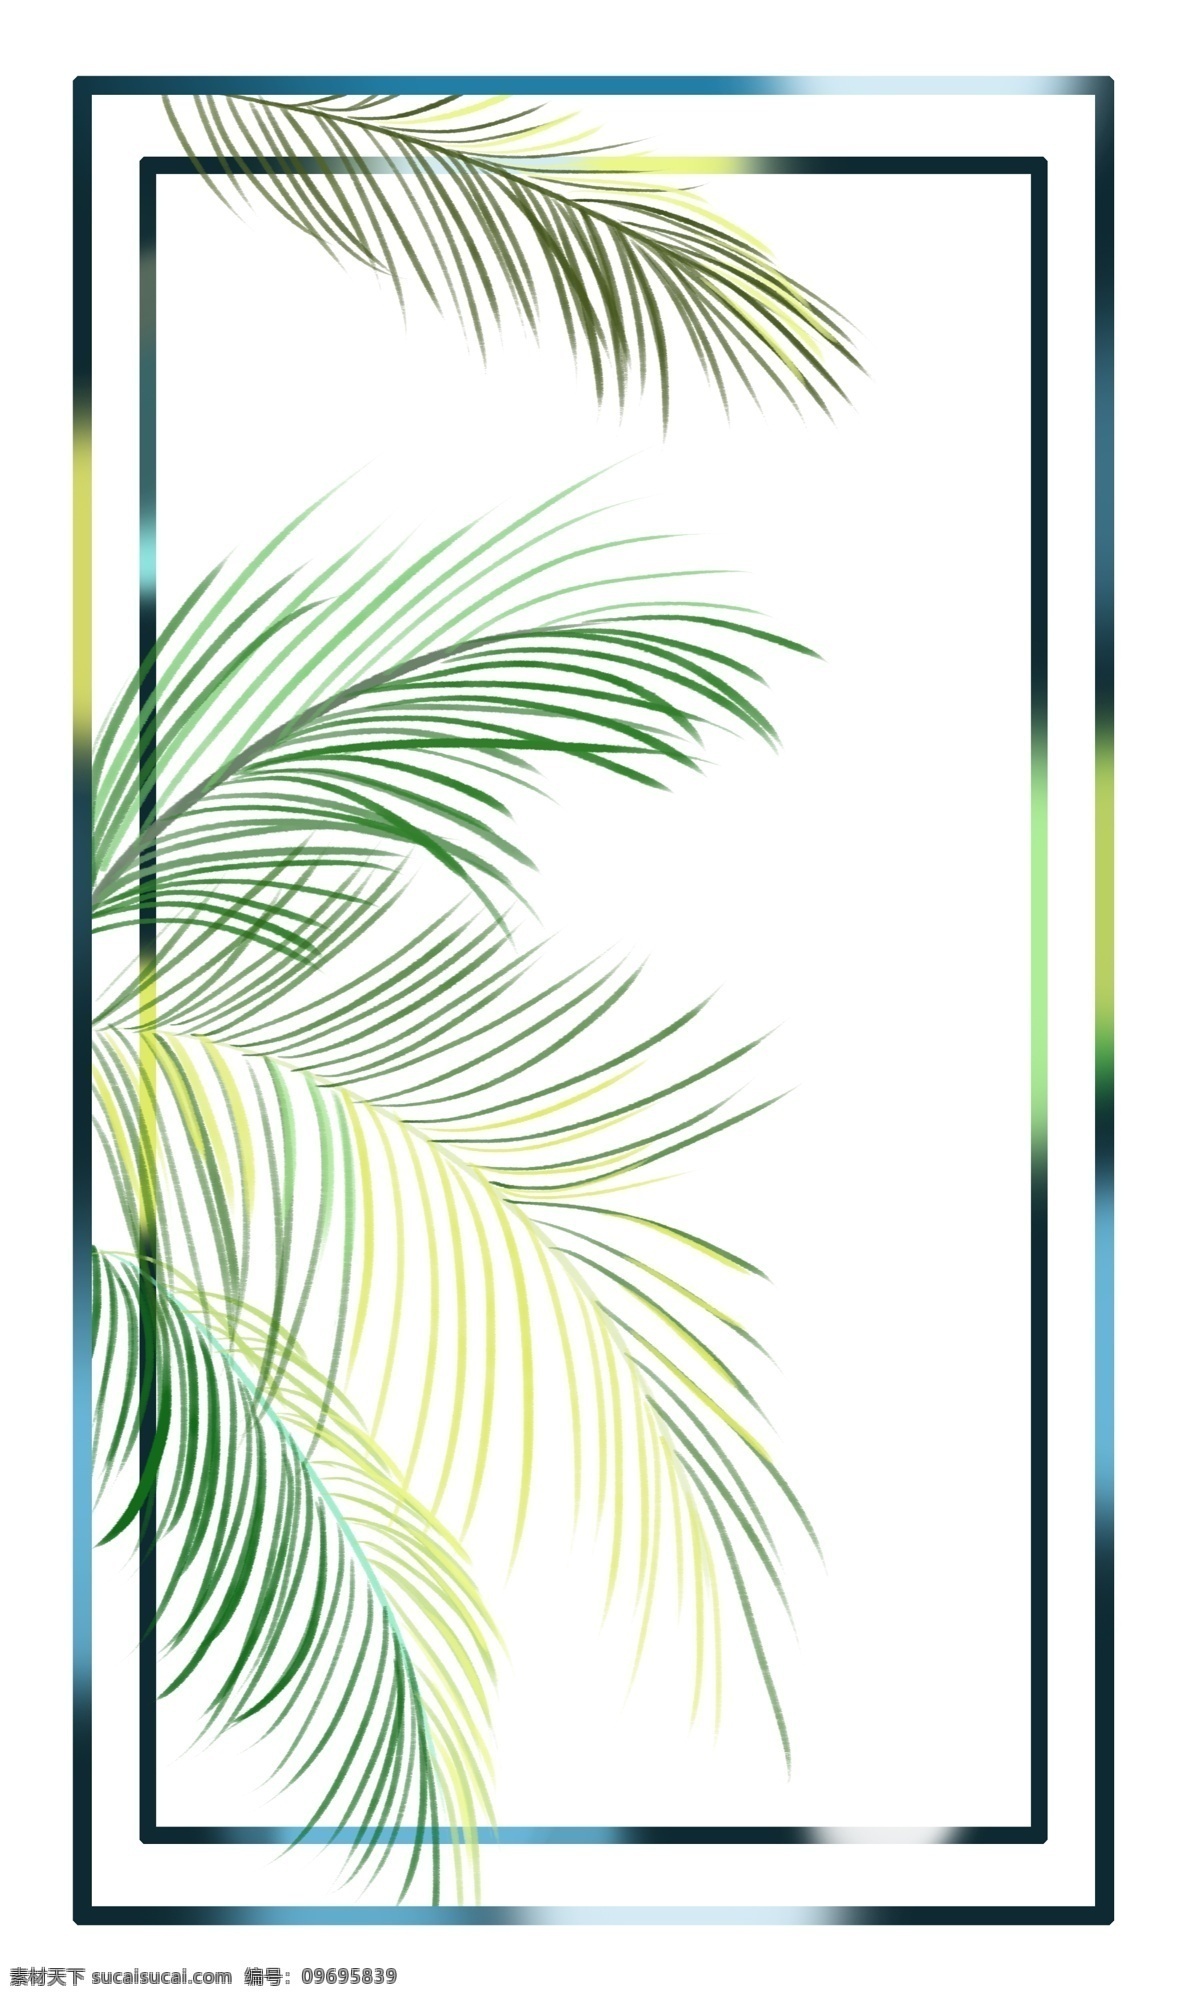 夏威夷 棕榈树 边框 绿色 植物边框 可自行组合 写意 浪漫 风格 夏日风情